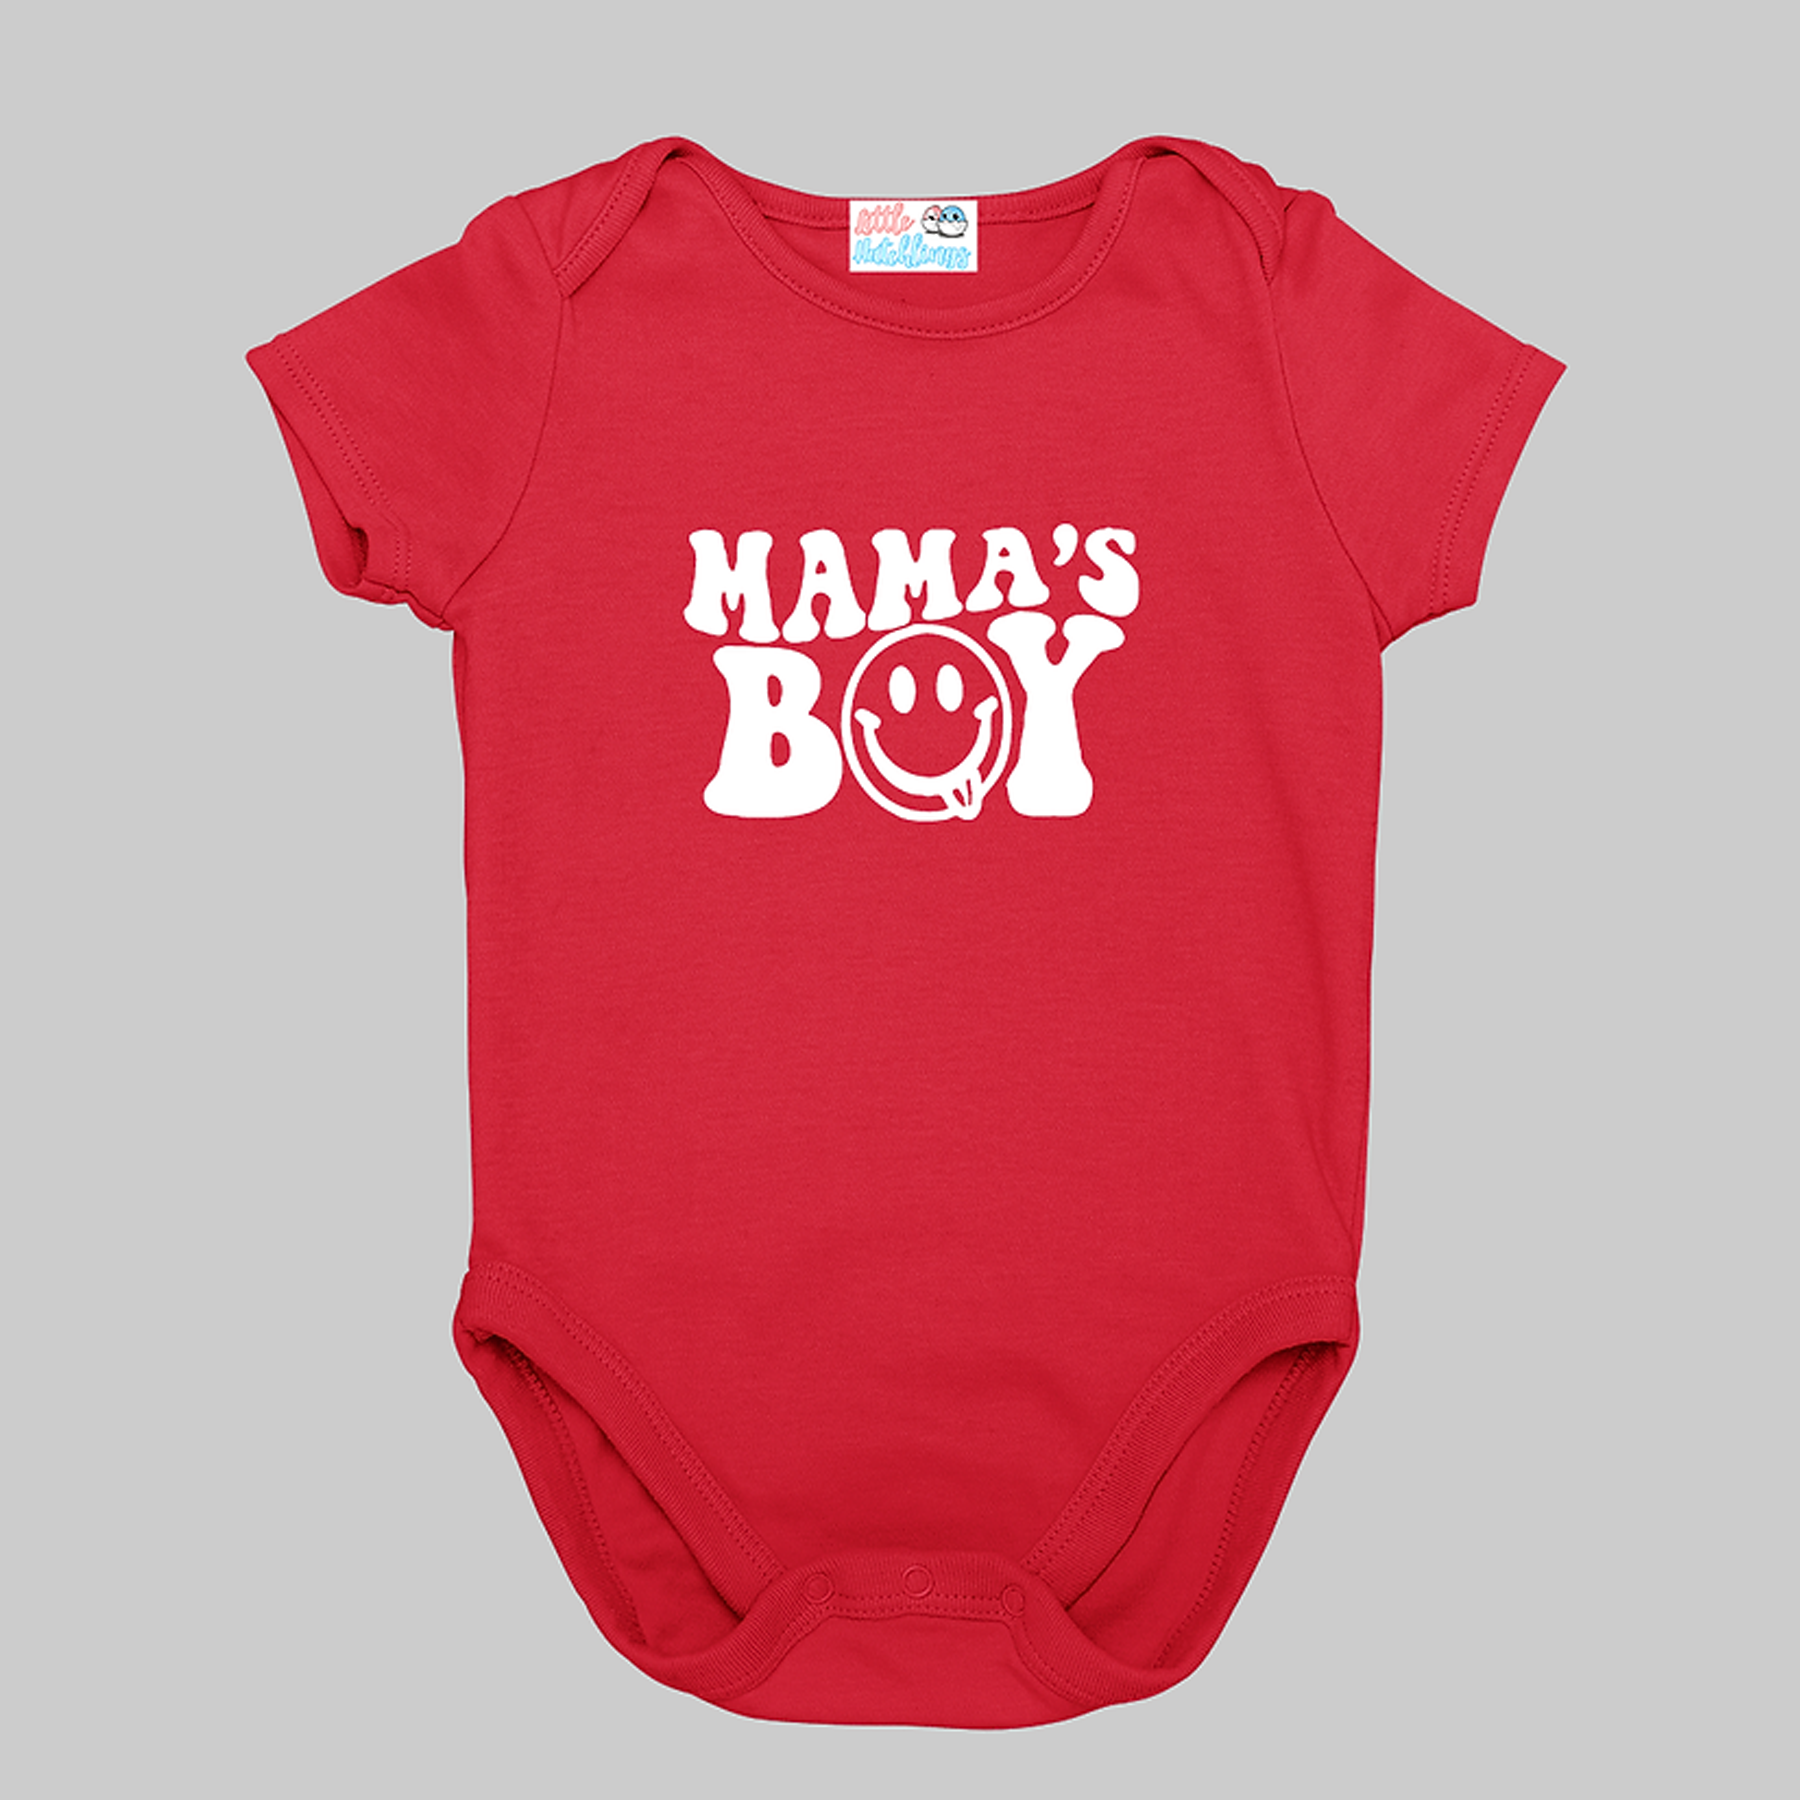 Mama's Boy  - Red Onesie / Romper / Tshirt